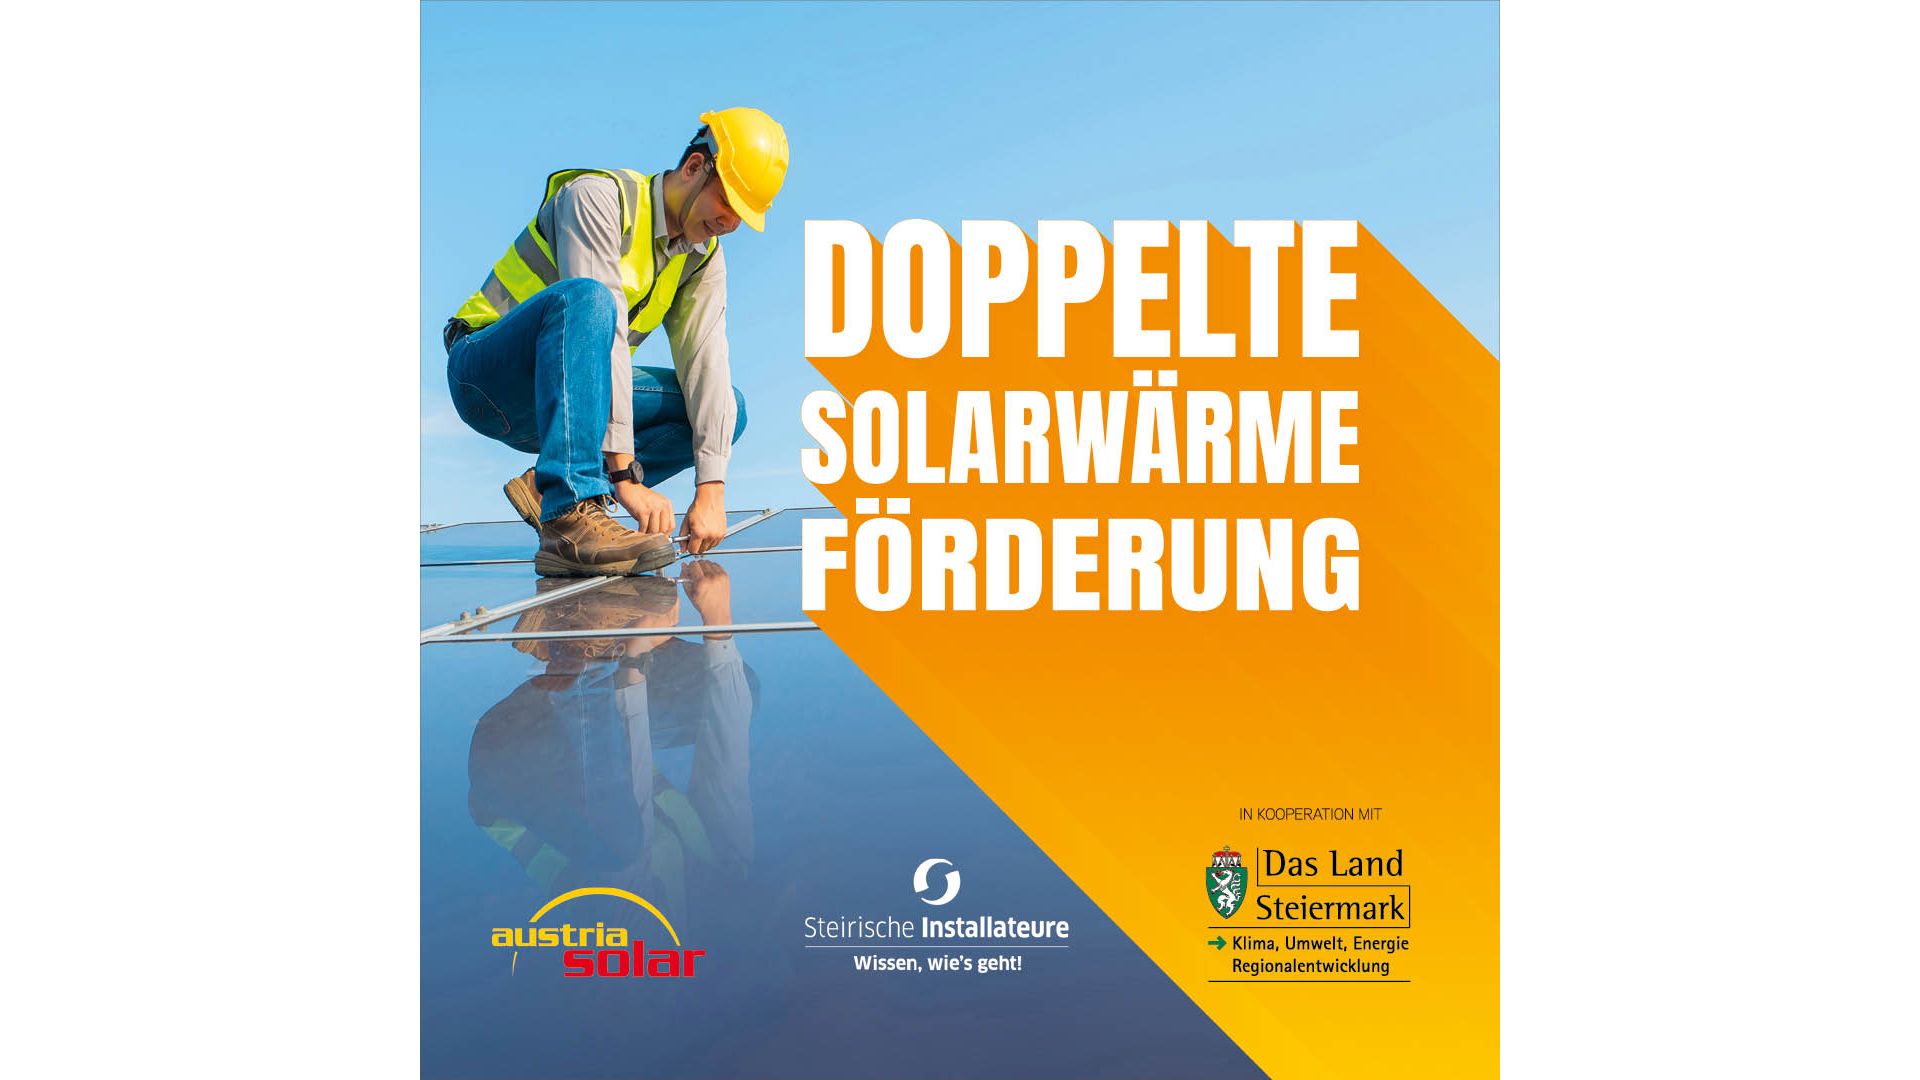 Doppeltsolar - Doppelte Solarwärme Förderung in der Steiermark